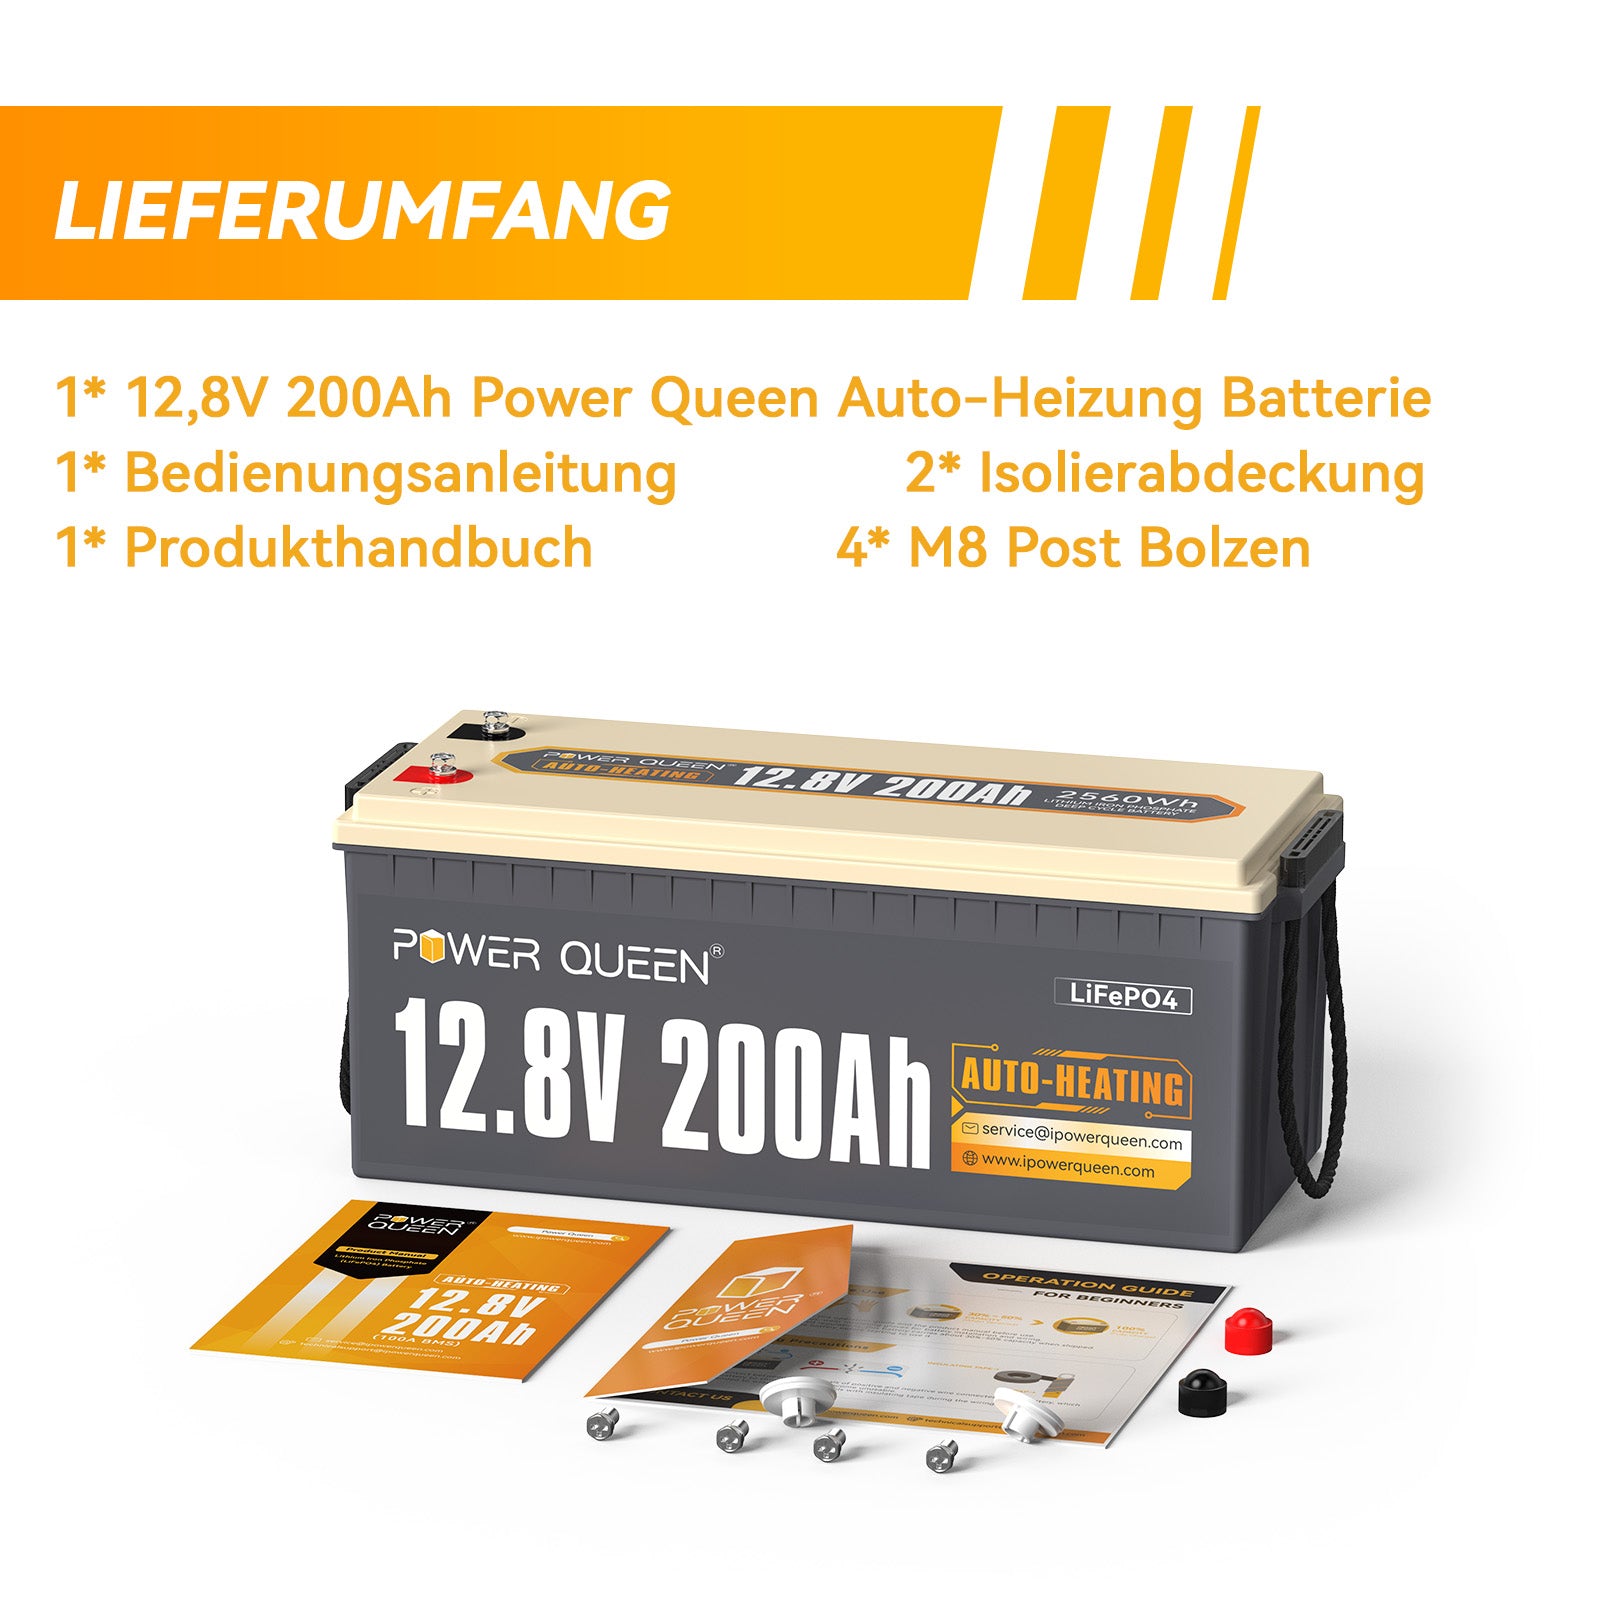 【0% BTW】Power Queen 12,8 V 200 Ah zelfverwarmende LiFePO4-batterij, ingebouwd 100 A BMS